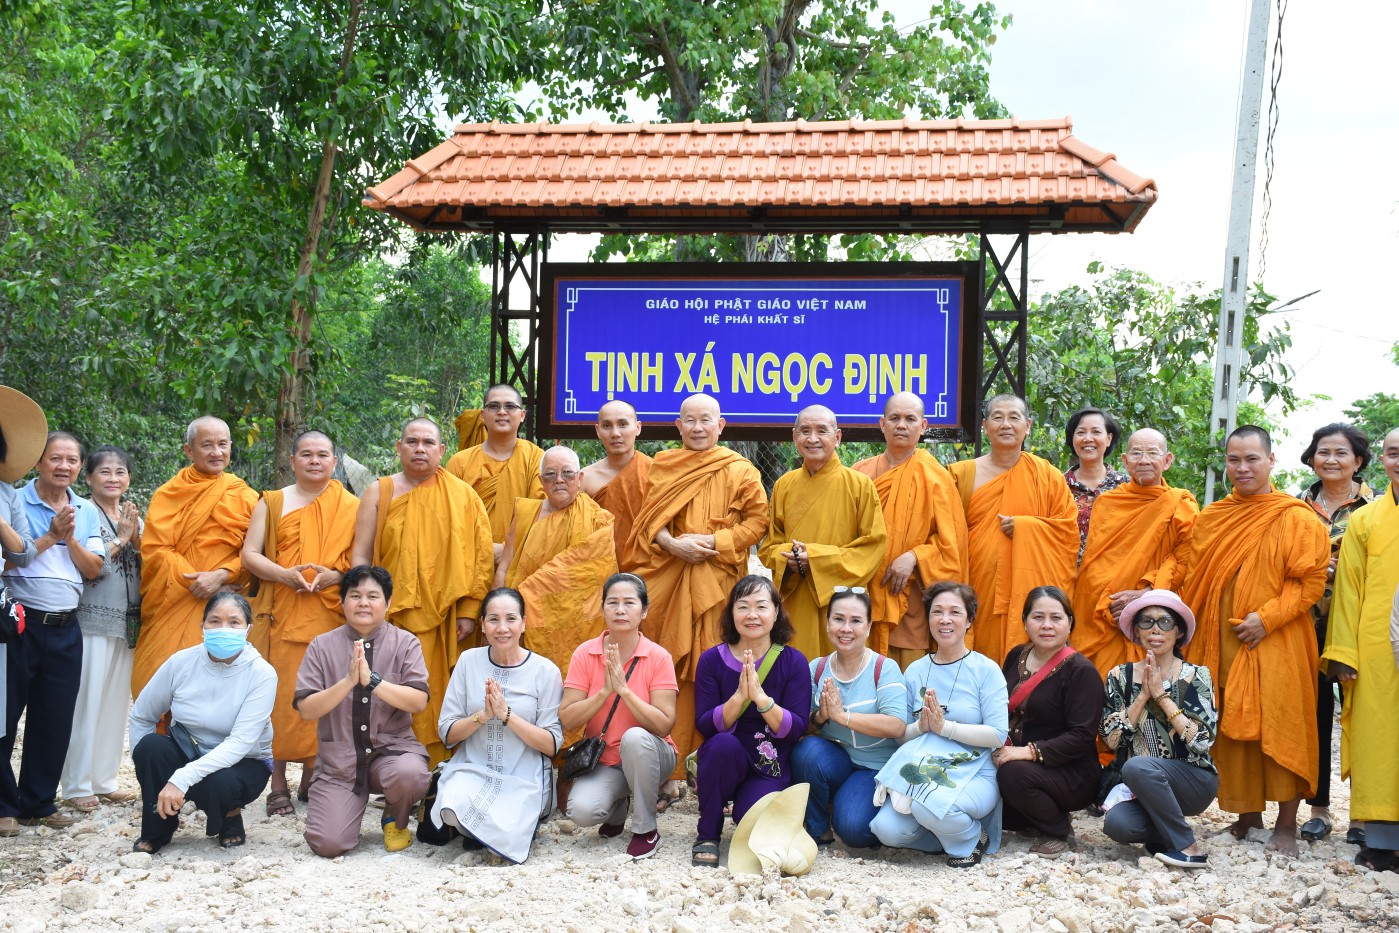 Bình Dương: Giáo đoàn 6 tái lập tịnh xá Ngọc Định